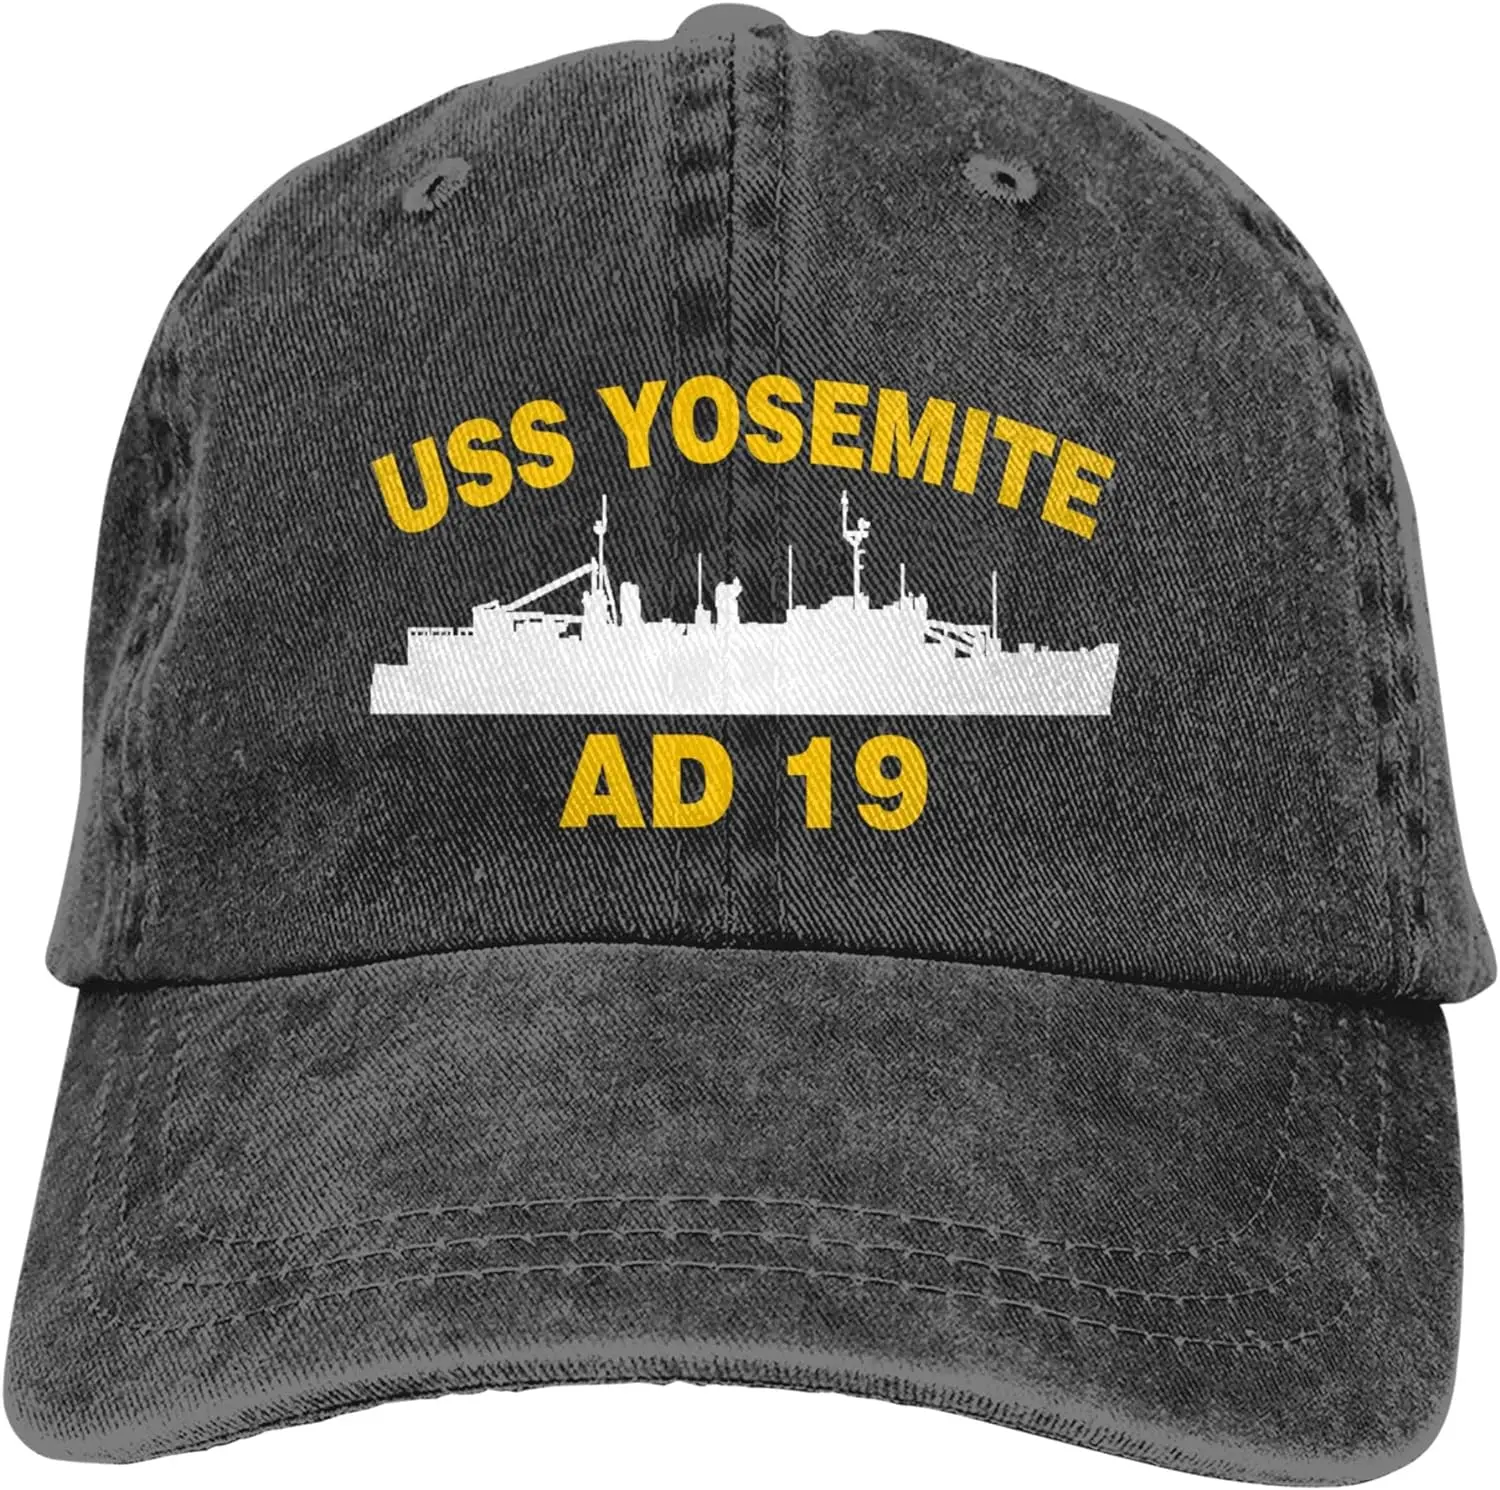 

USS Yosemite AD 19 винтажная шапка-сэндвич, бейсболки, джинсовые шапки, ковбойские